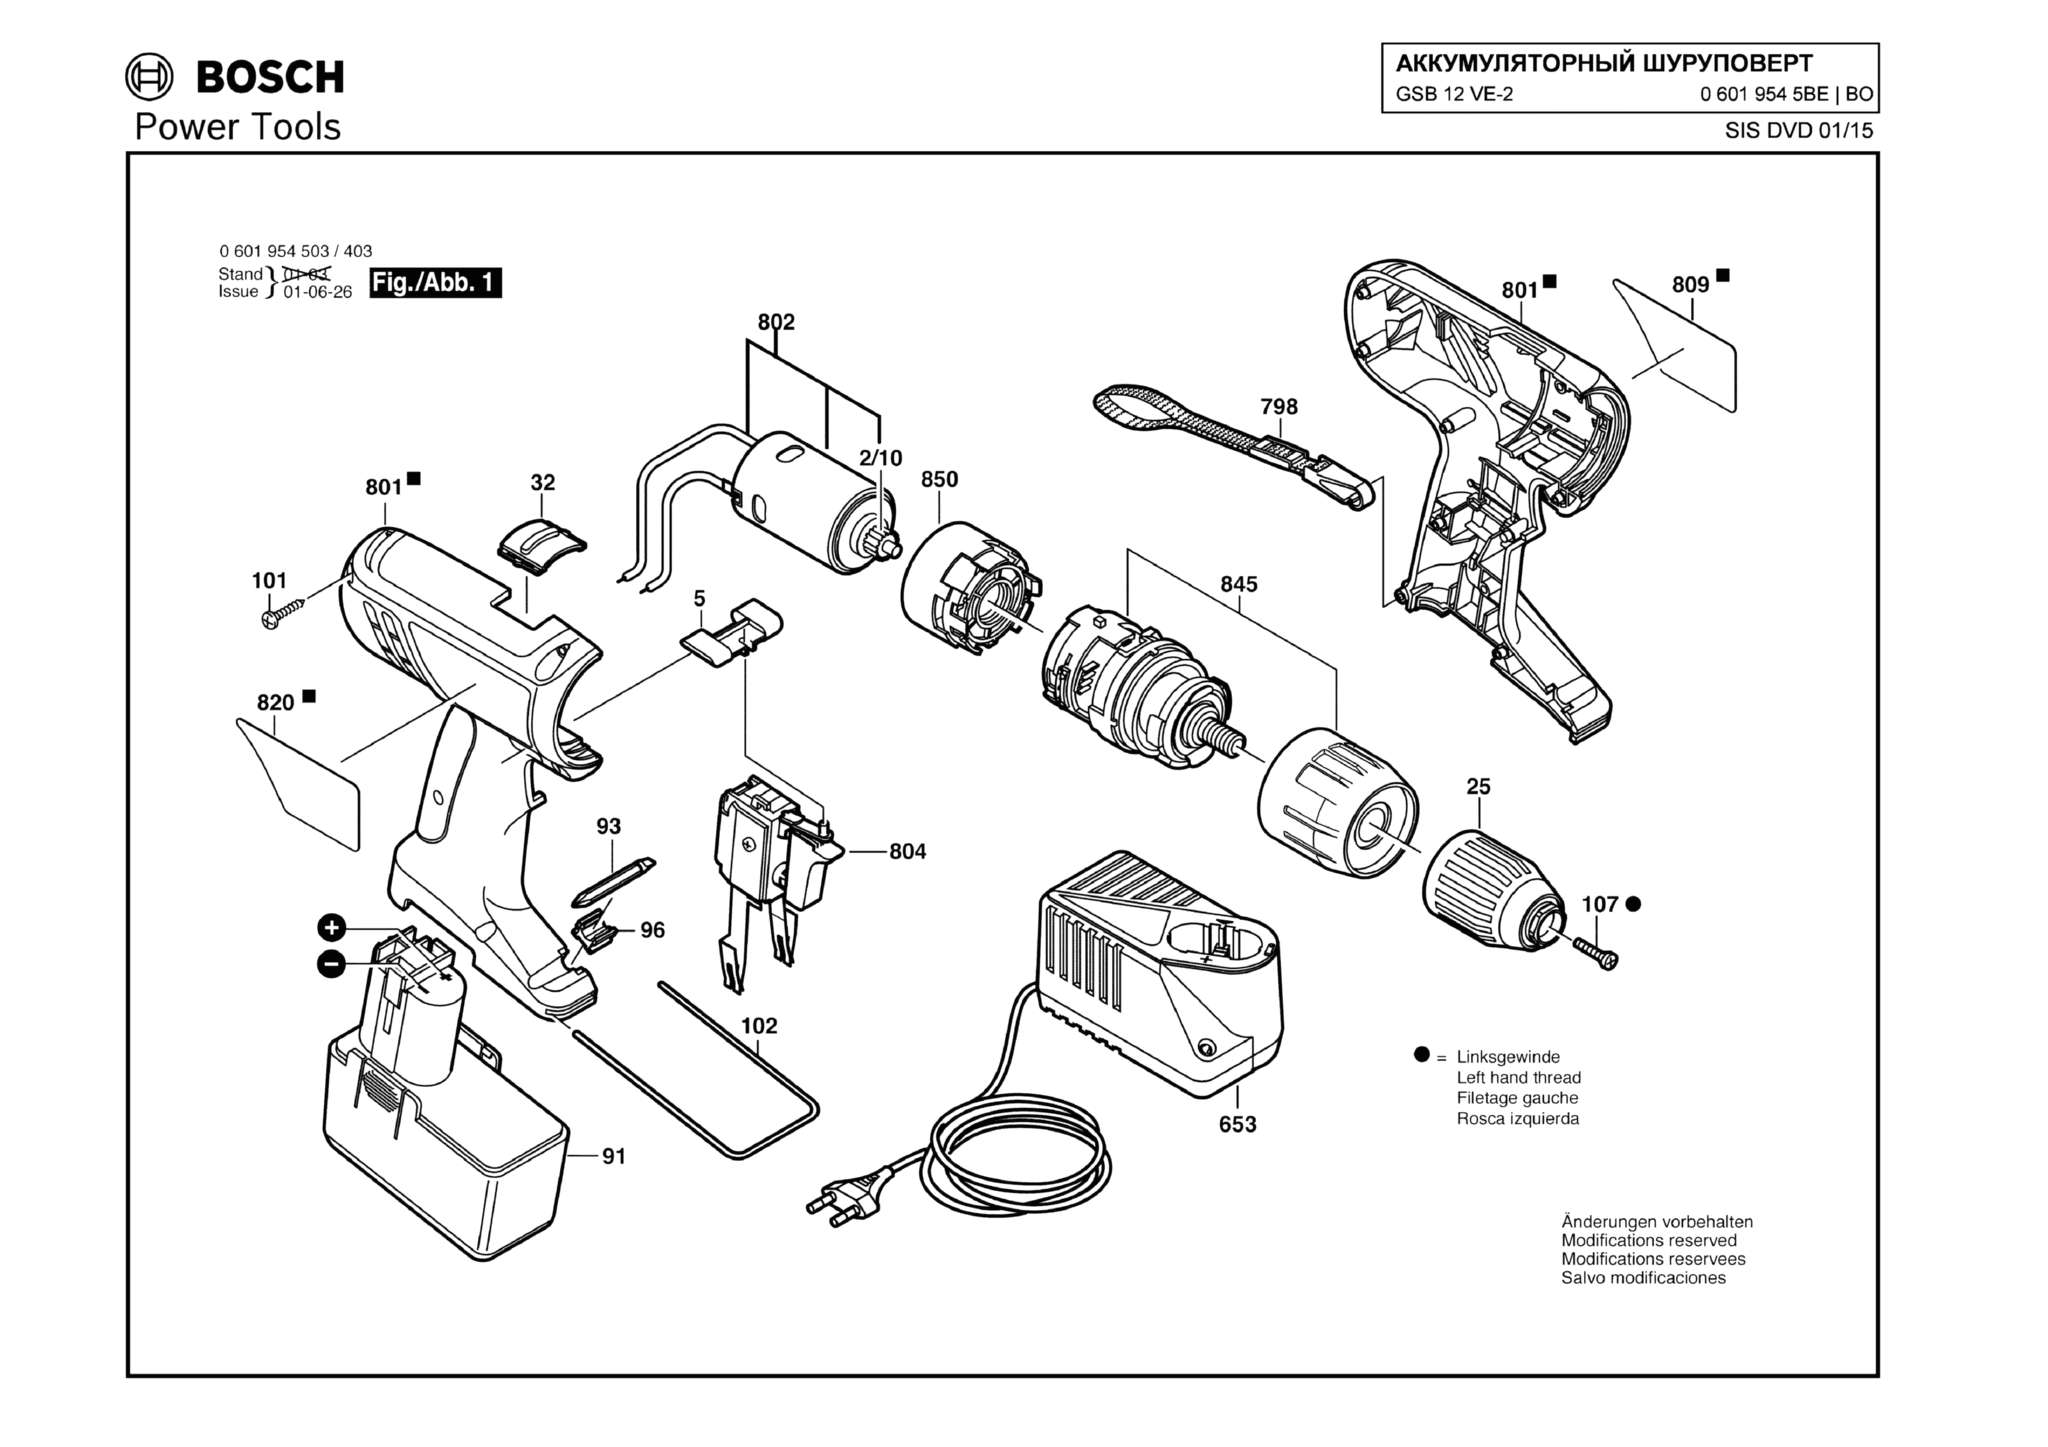 Запчасти, схема и деталировка Bosch GSB 12 VE-2 (ТИП 06019545BE)